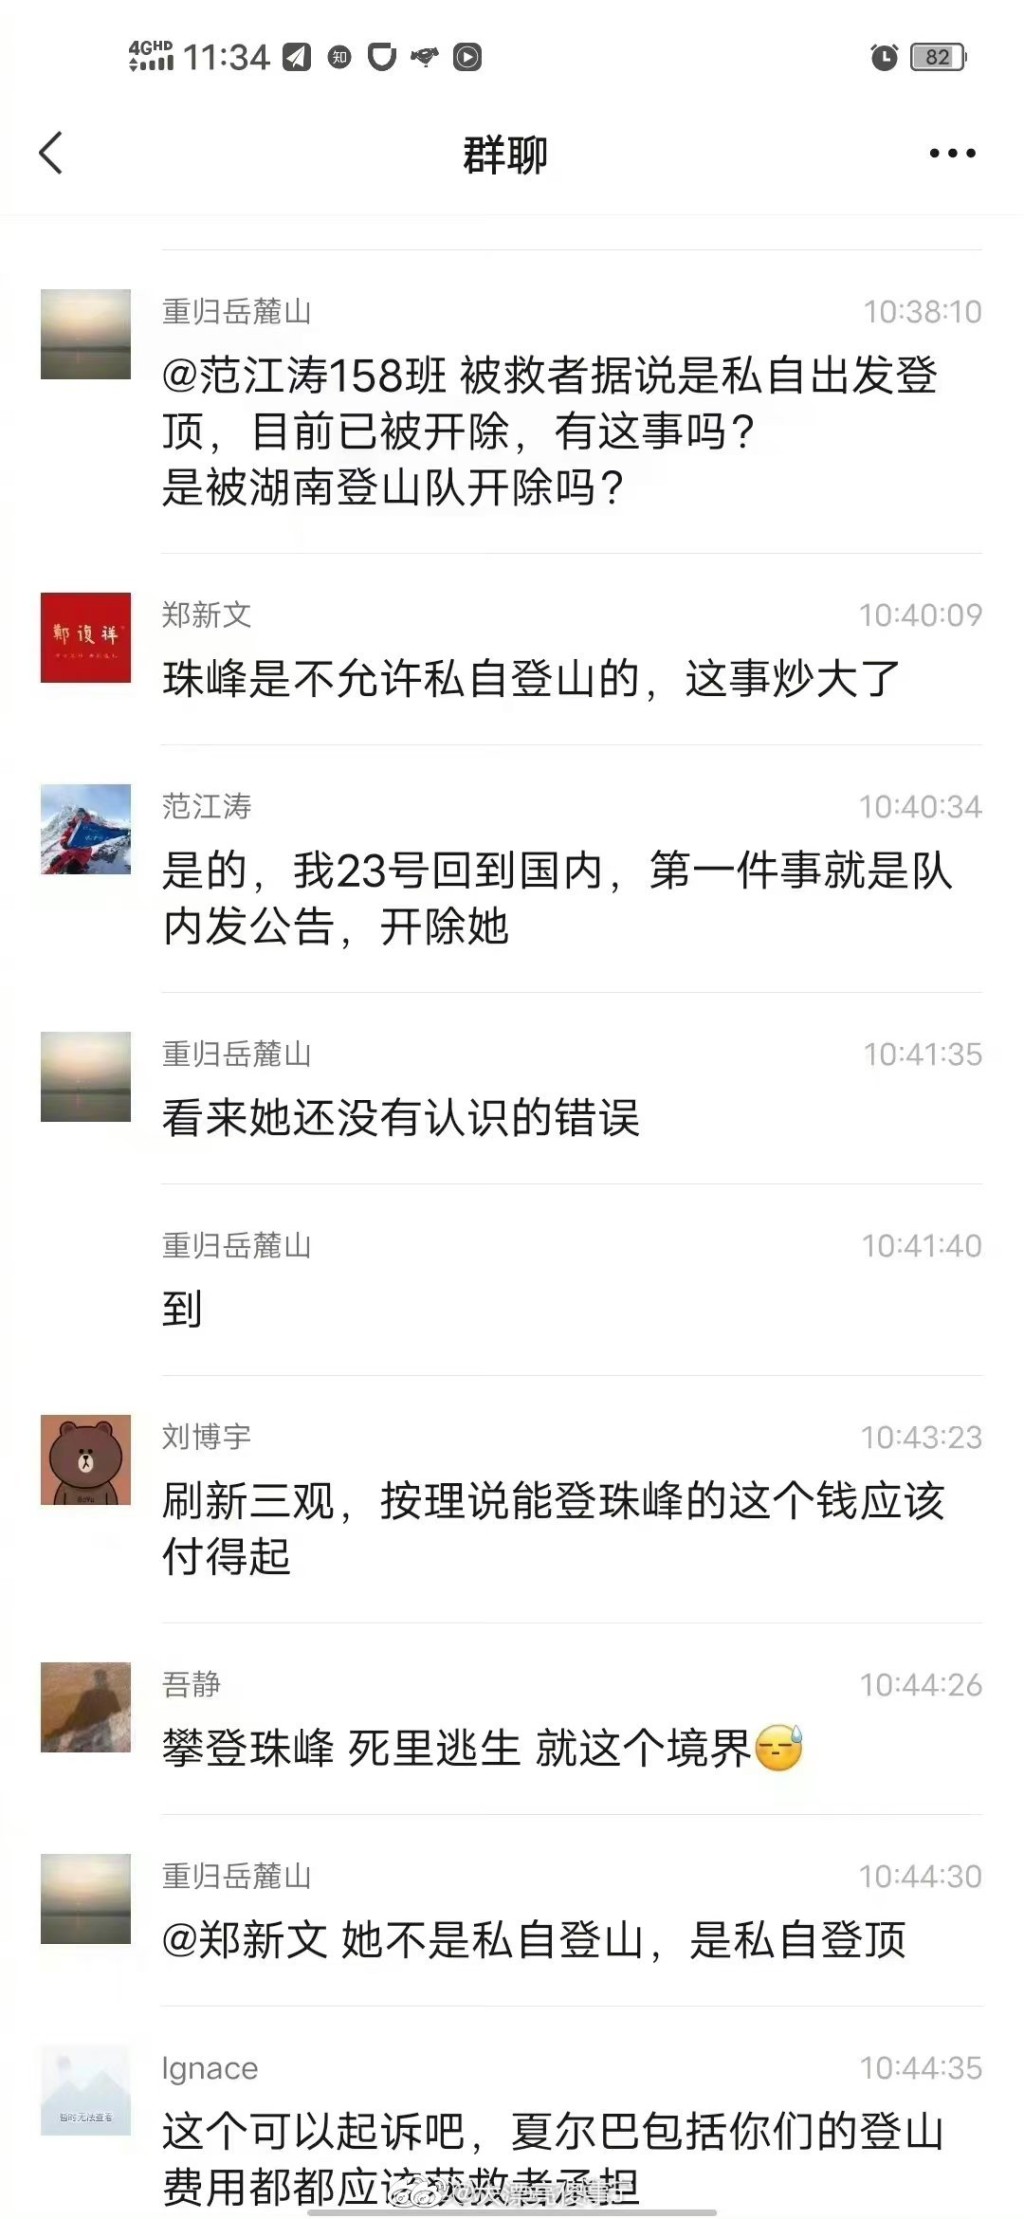 范江濤在微信群組的留言。